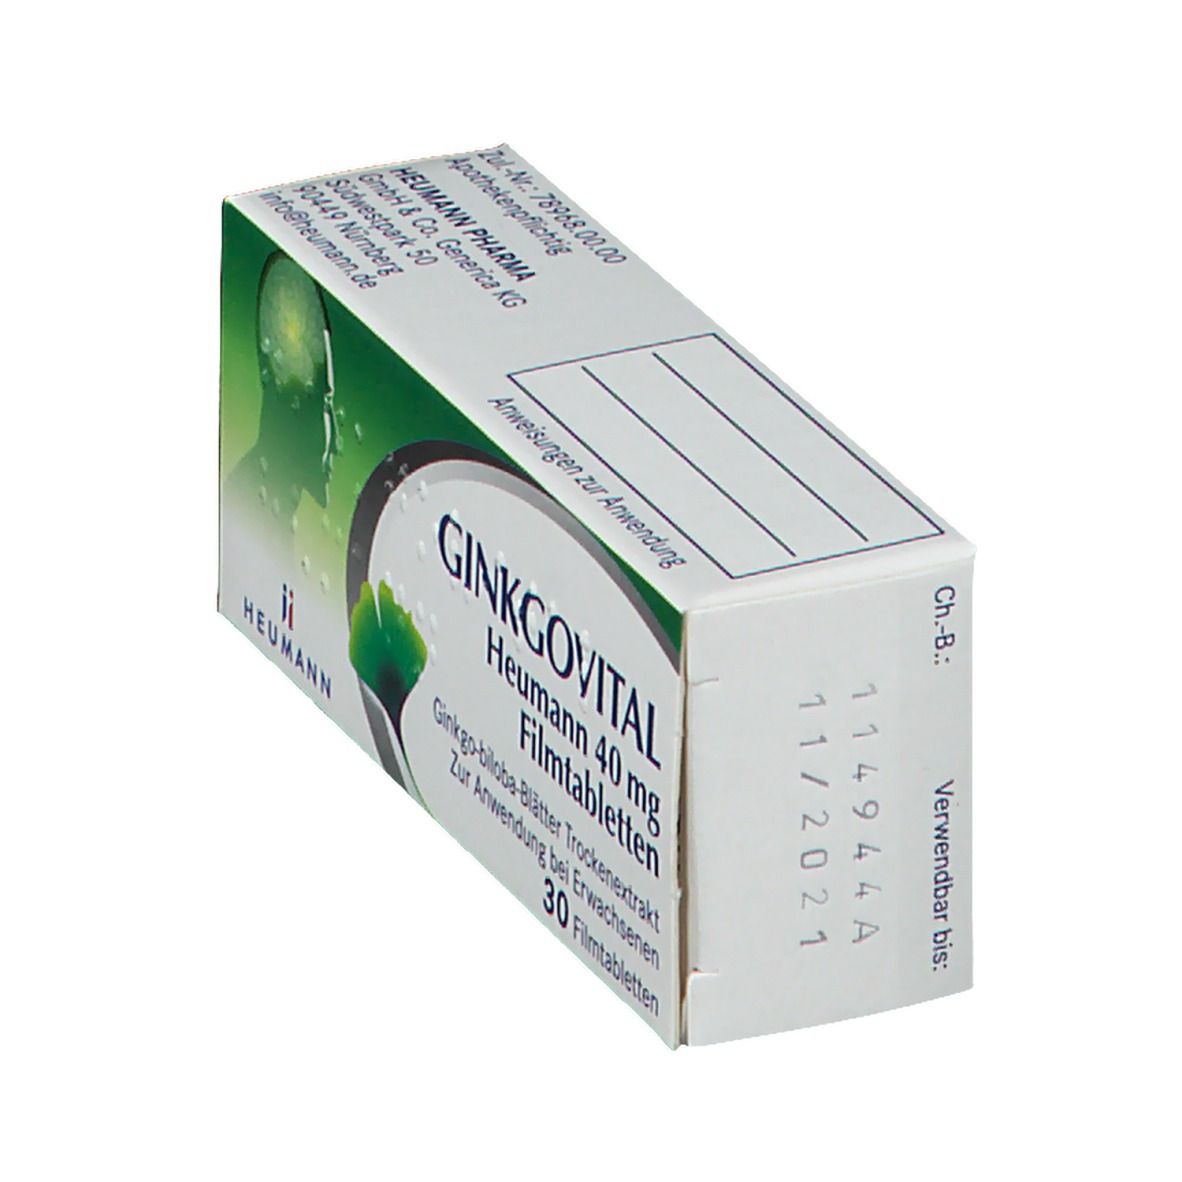 GINKGOVITAL® Heumann 40 mg